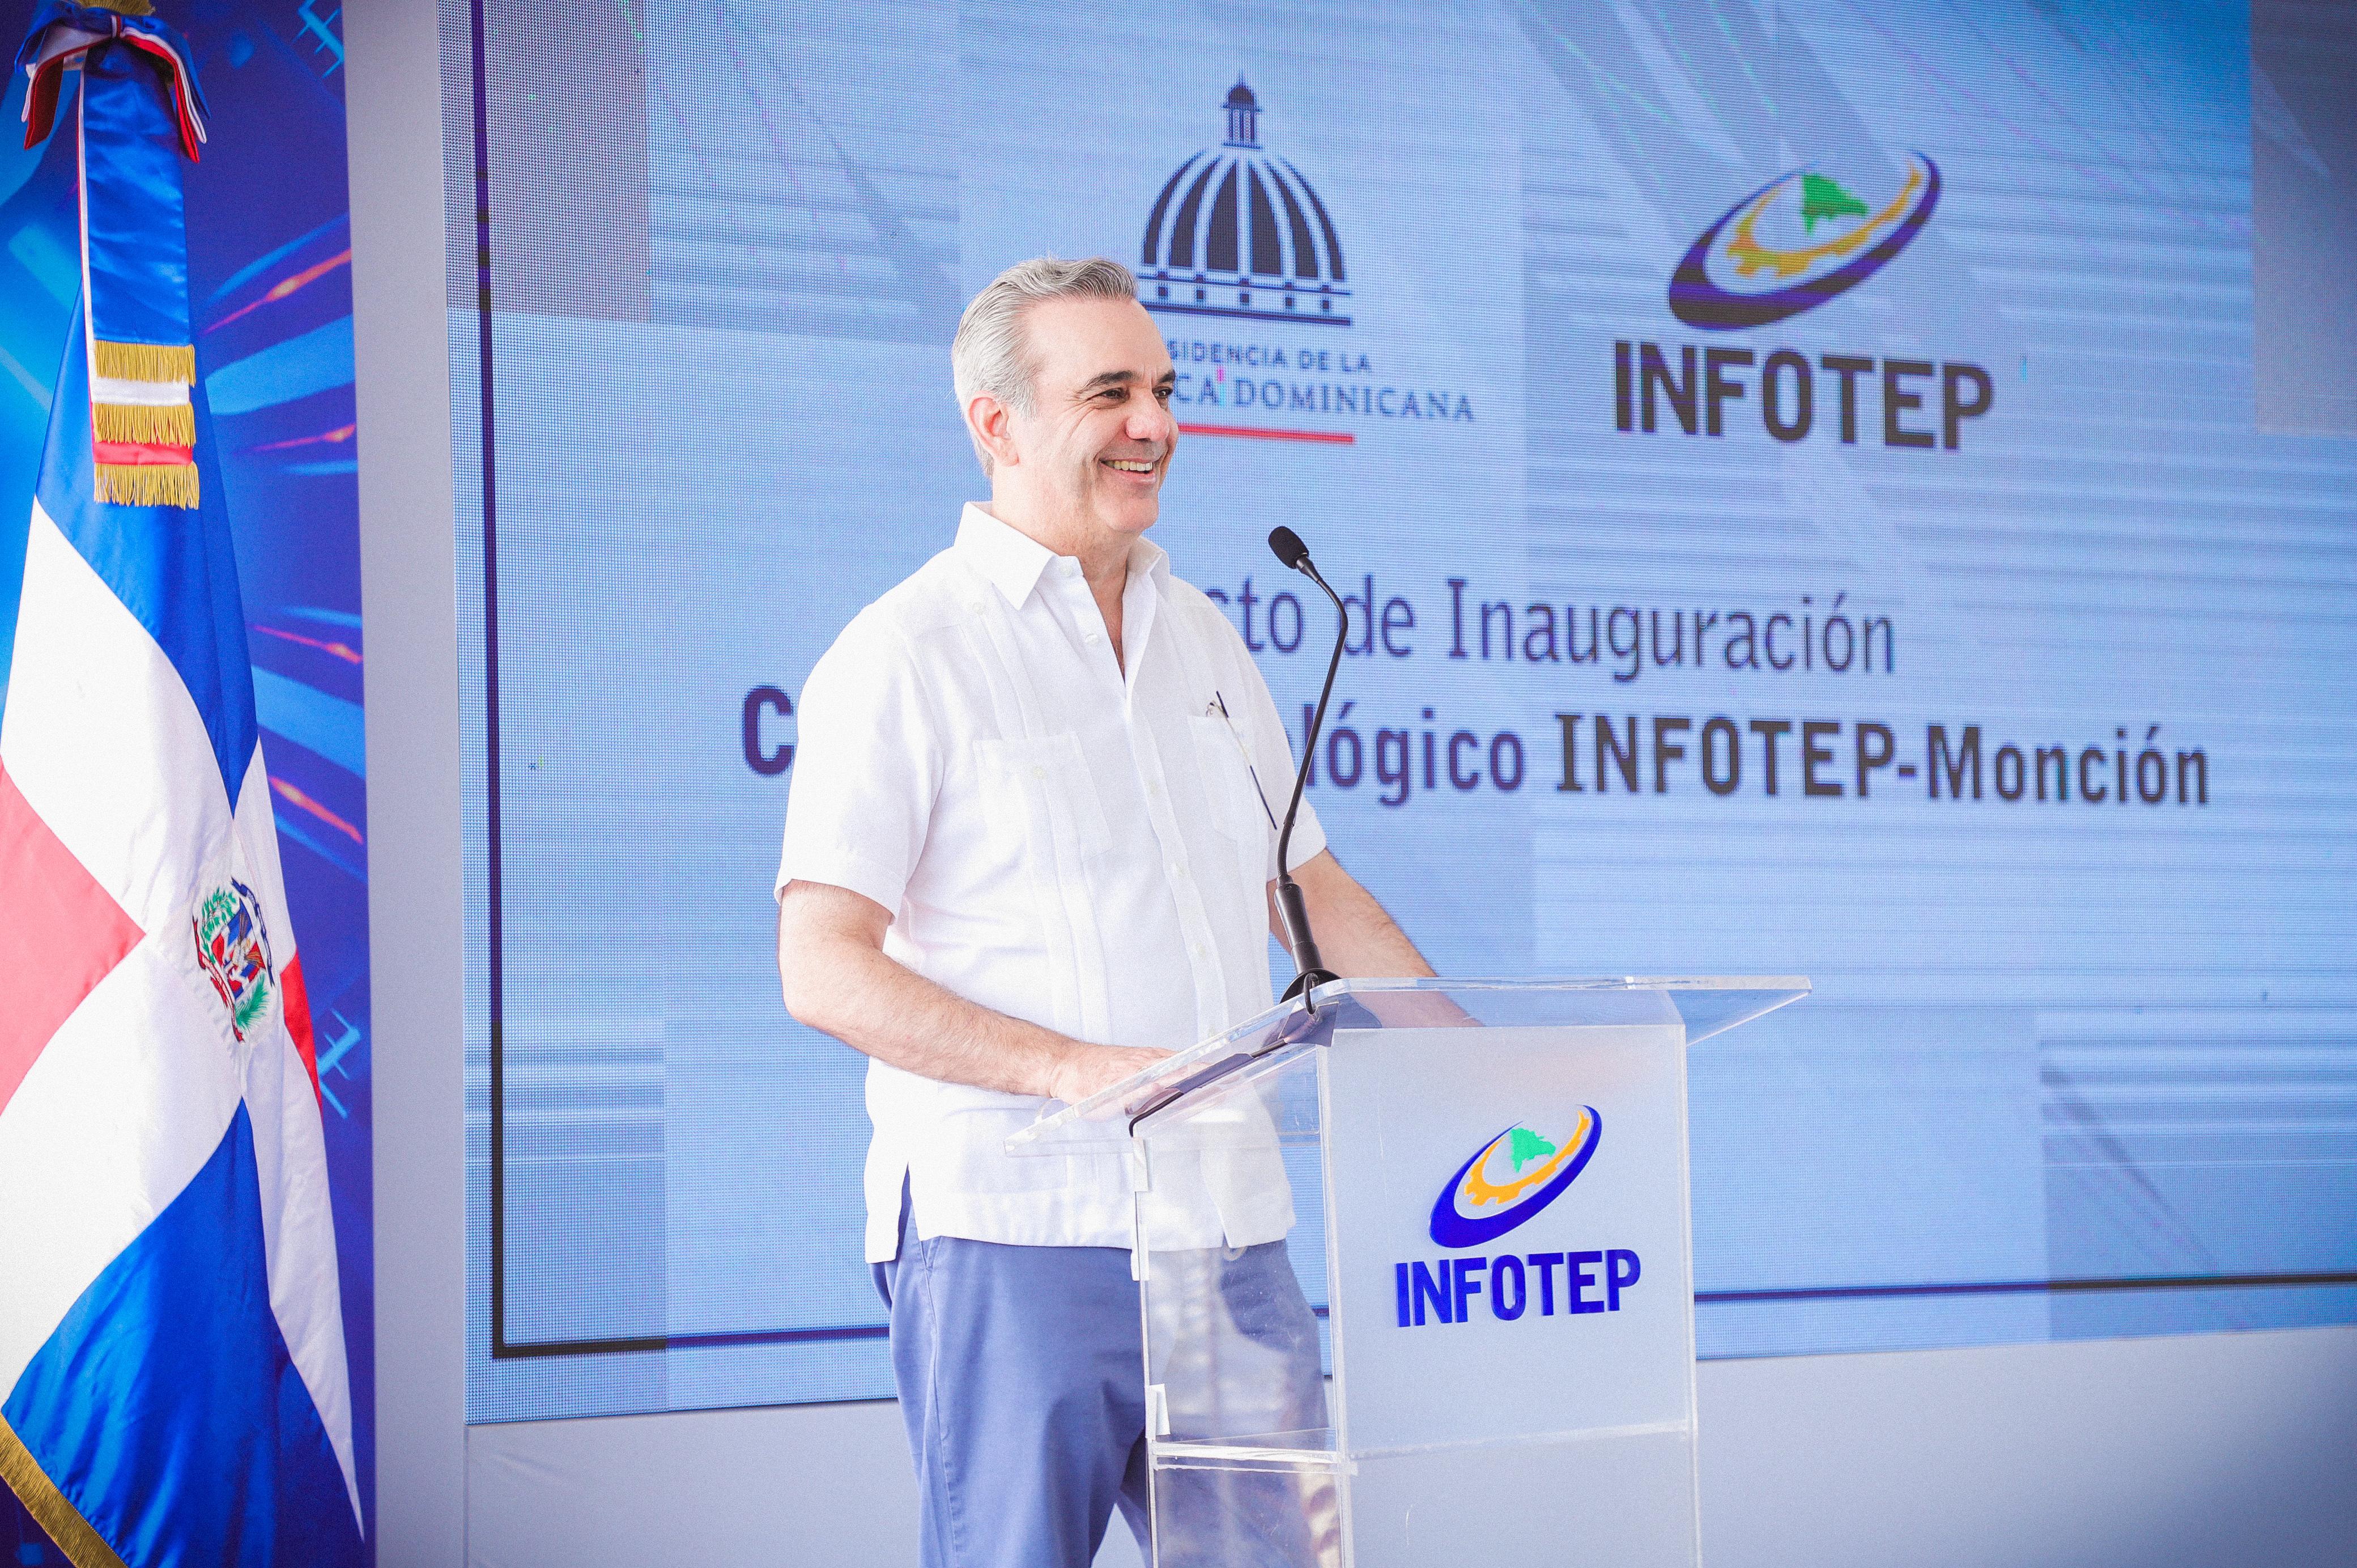 REPÚBLICA DOMINICANA: Presidente Abinader inaugura en Santiago Rodríguez dos centros Infotep, micro hidroeléctrica, hospital y carretera; histórica inversión en esta provin...